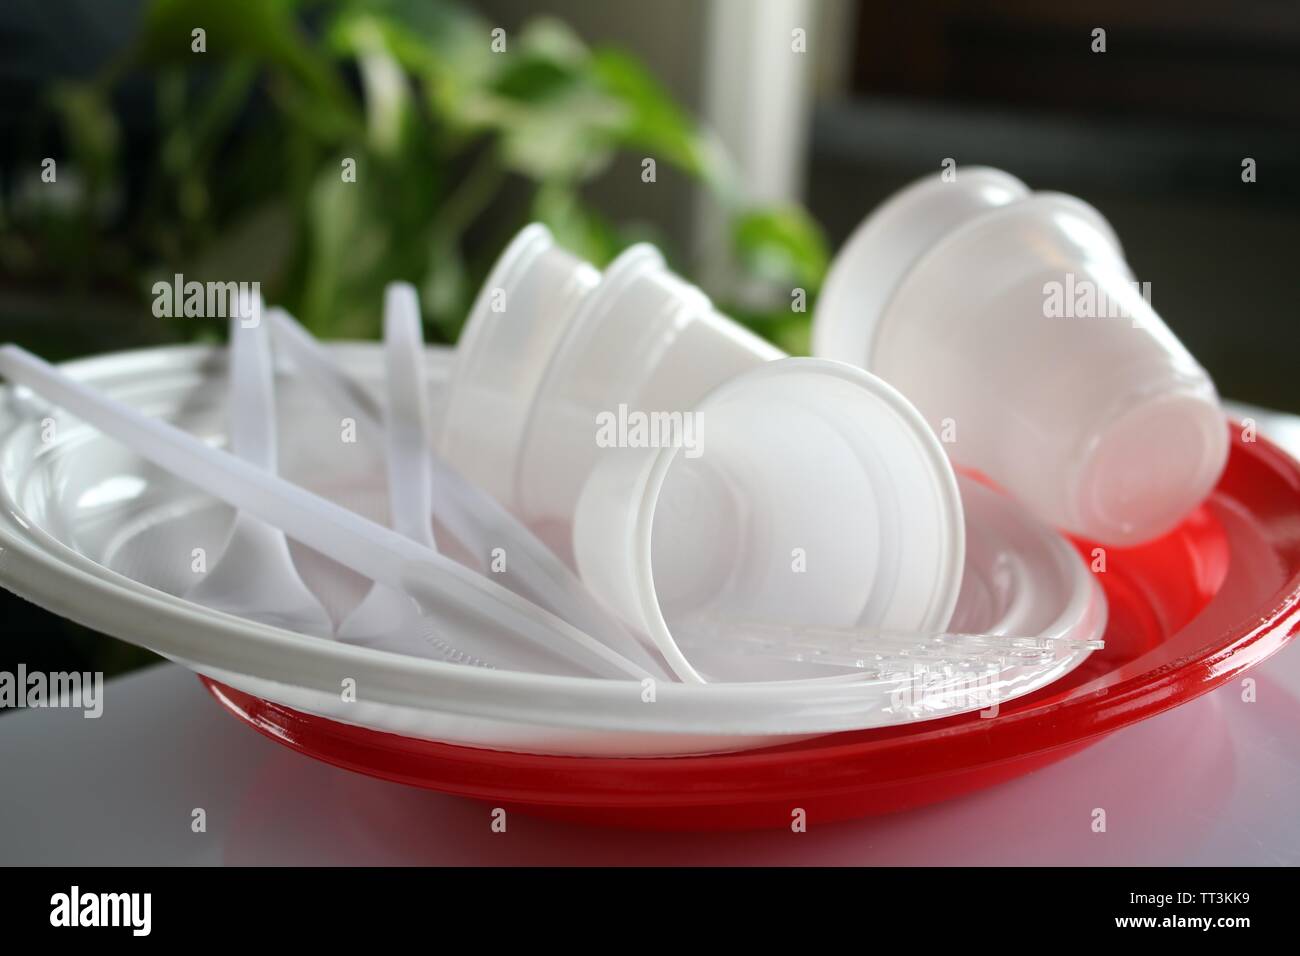 Platos Desechables y horquillas con pan y ketchup Fotografía de stock -  Alamy